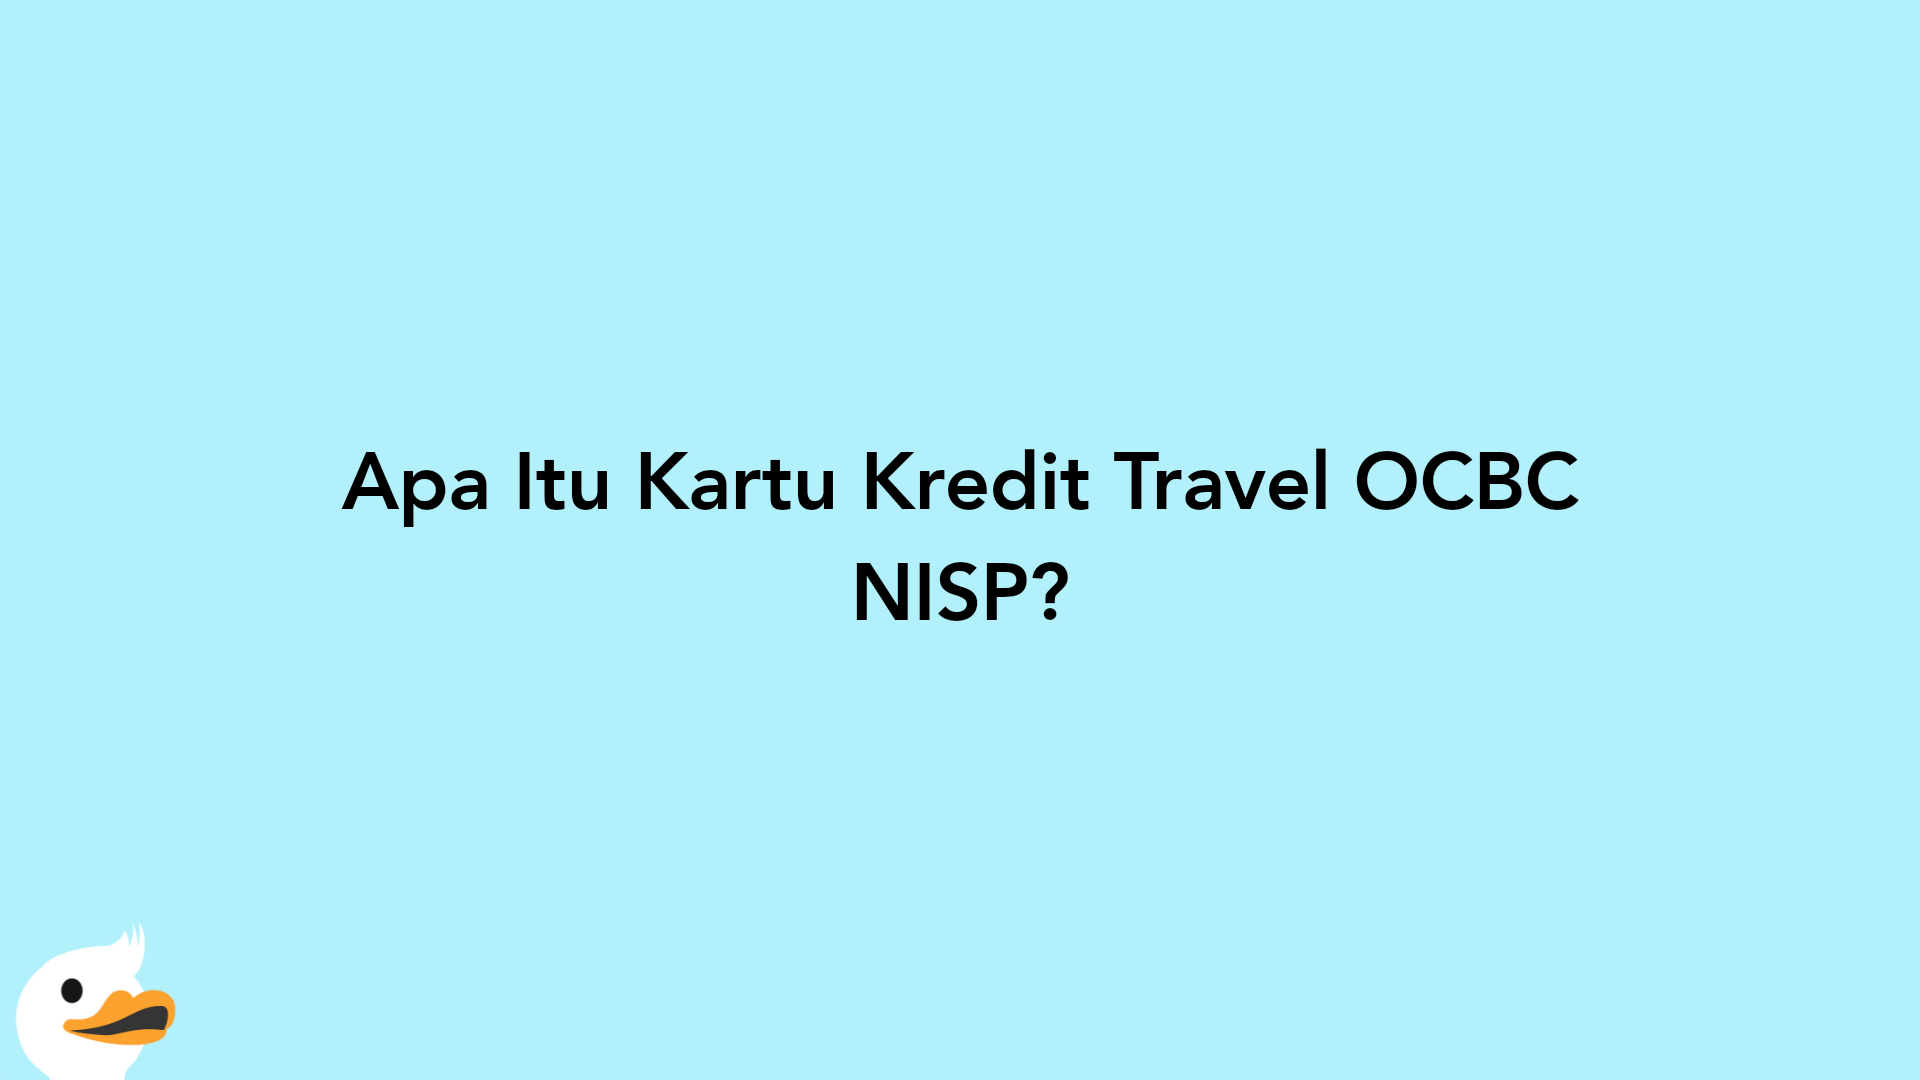 Apa Itu Kartu Kredit Travel OCBC NISP?